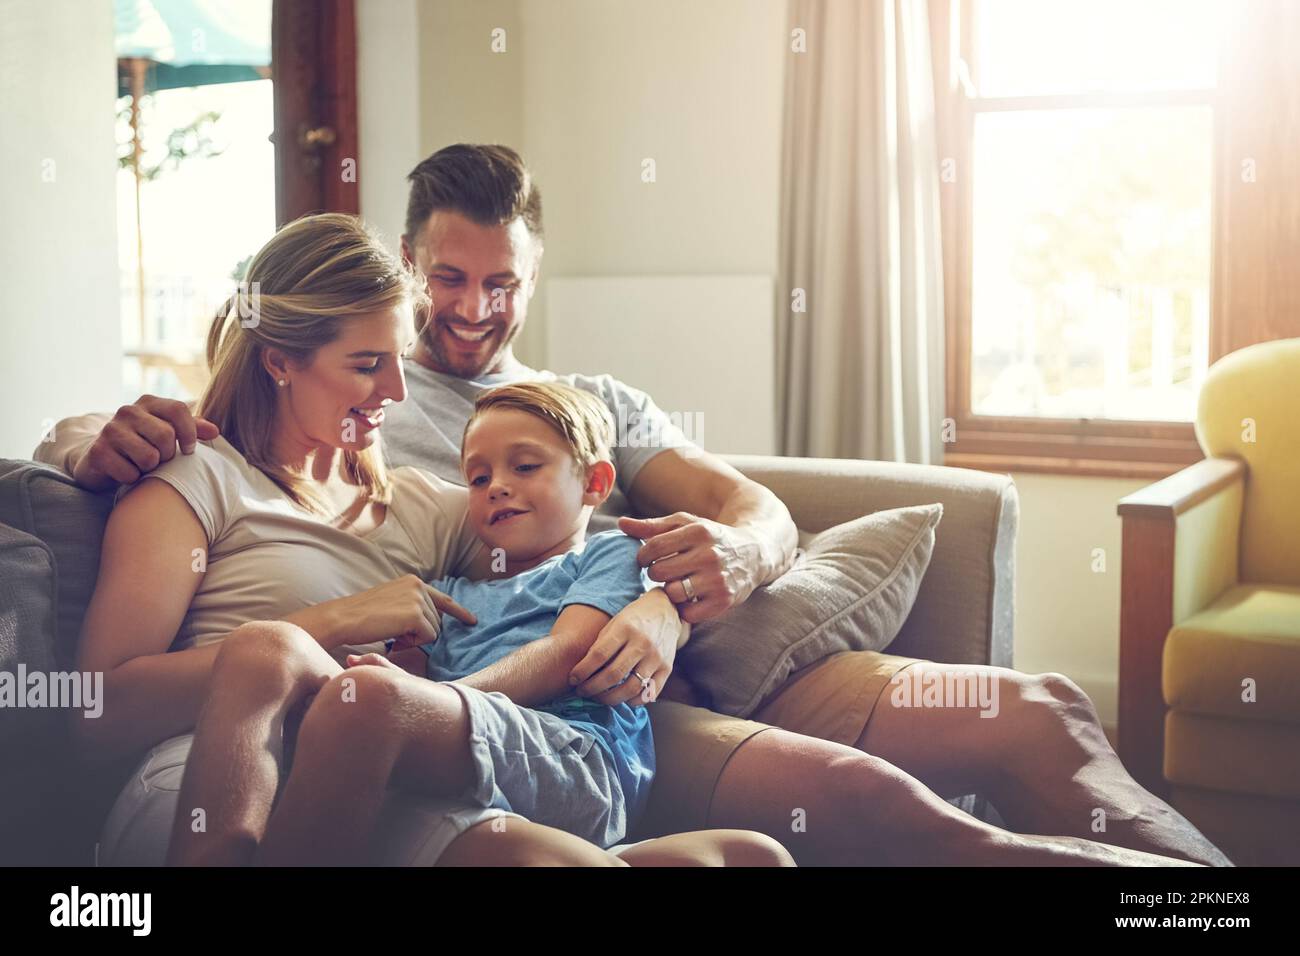 Nichts macht ein besseres Wochenende aus als ein Familienurlaub. Eine dreiköpfige Familie, die etwas Zeit zu Hause verbringt. Stockfoto